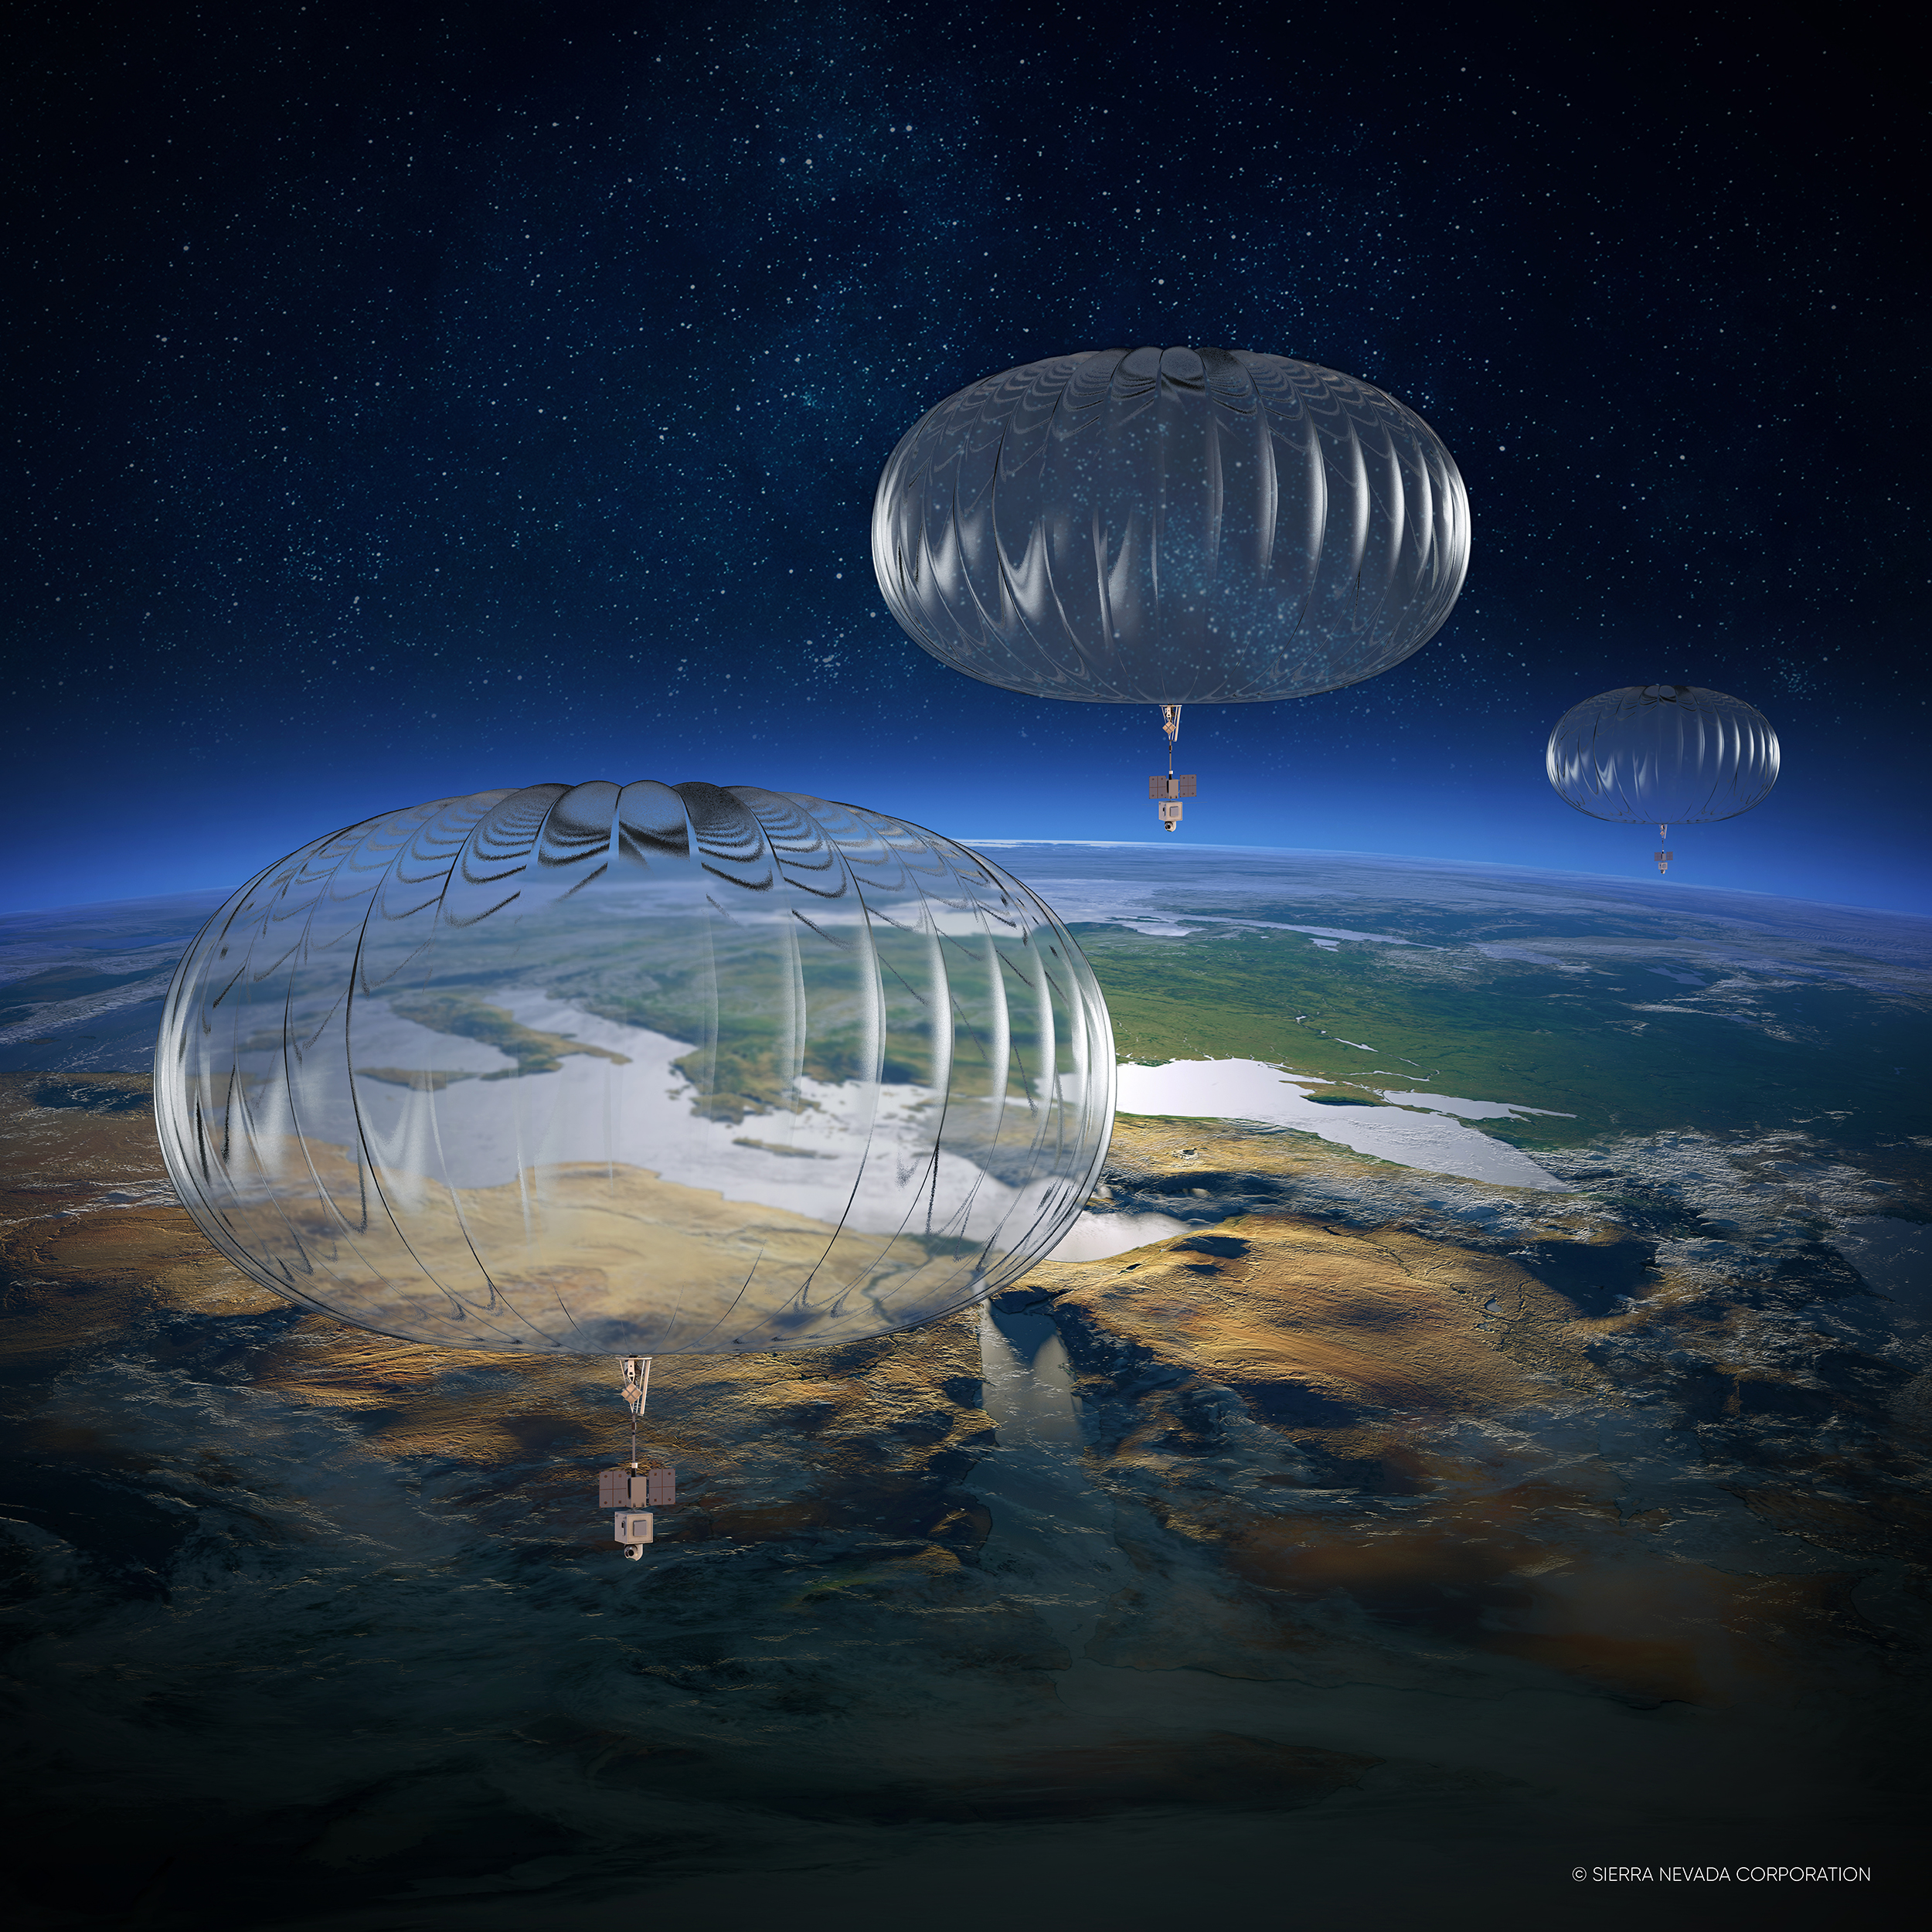 High-altitude balloons